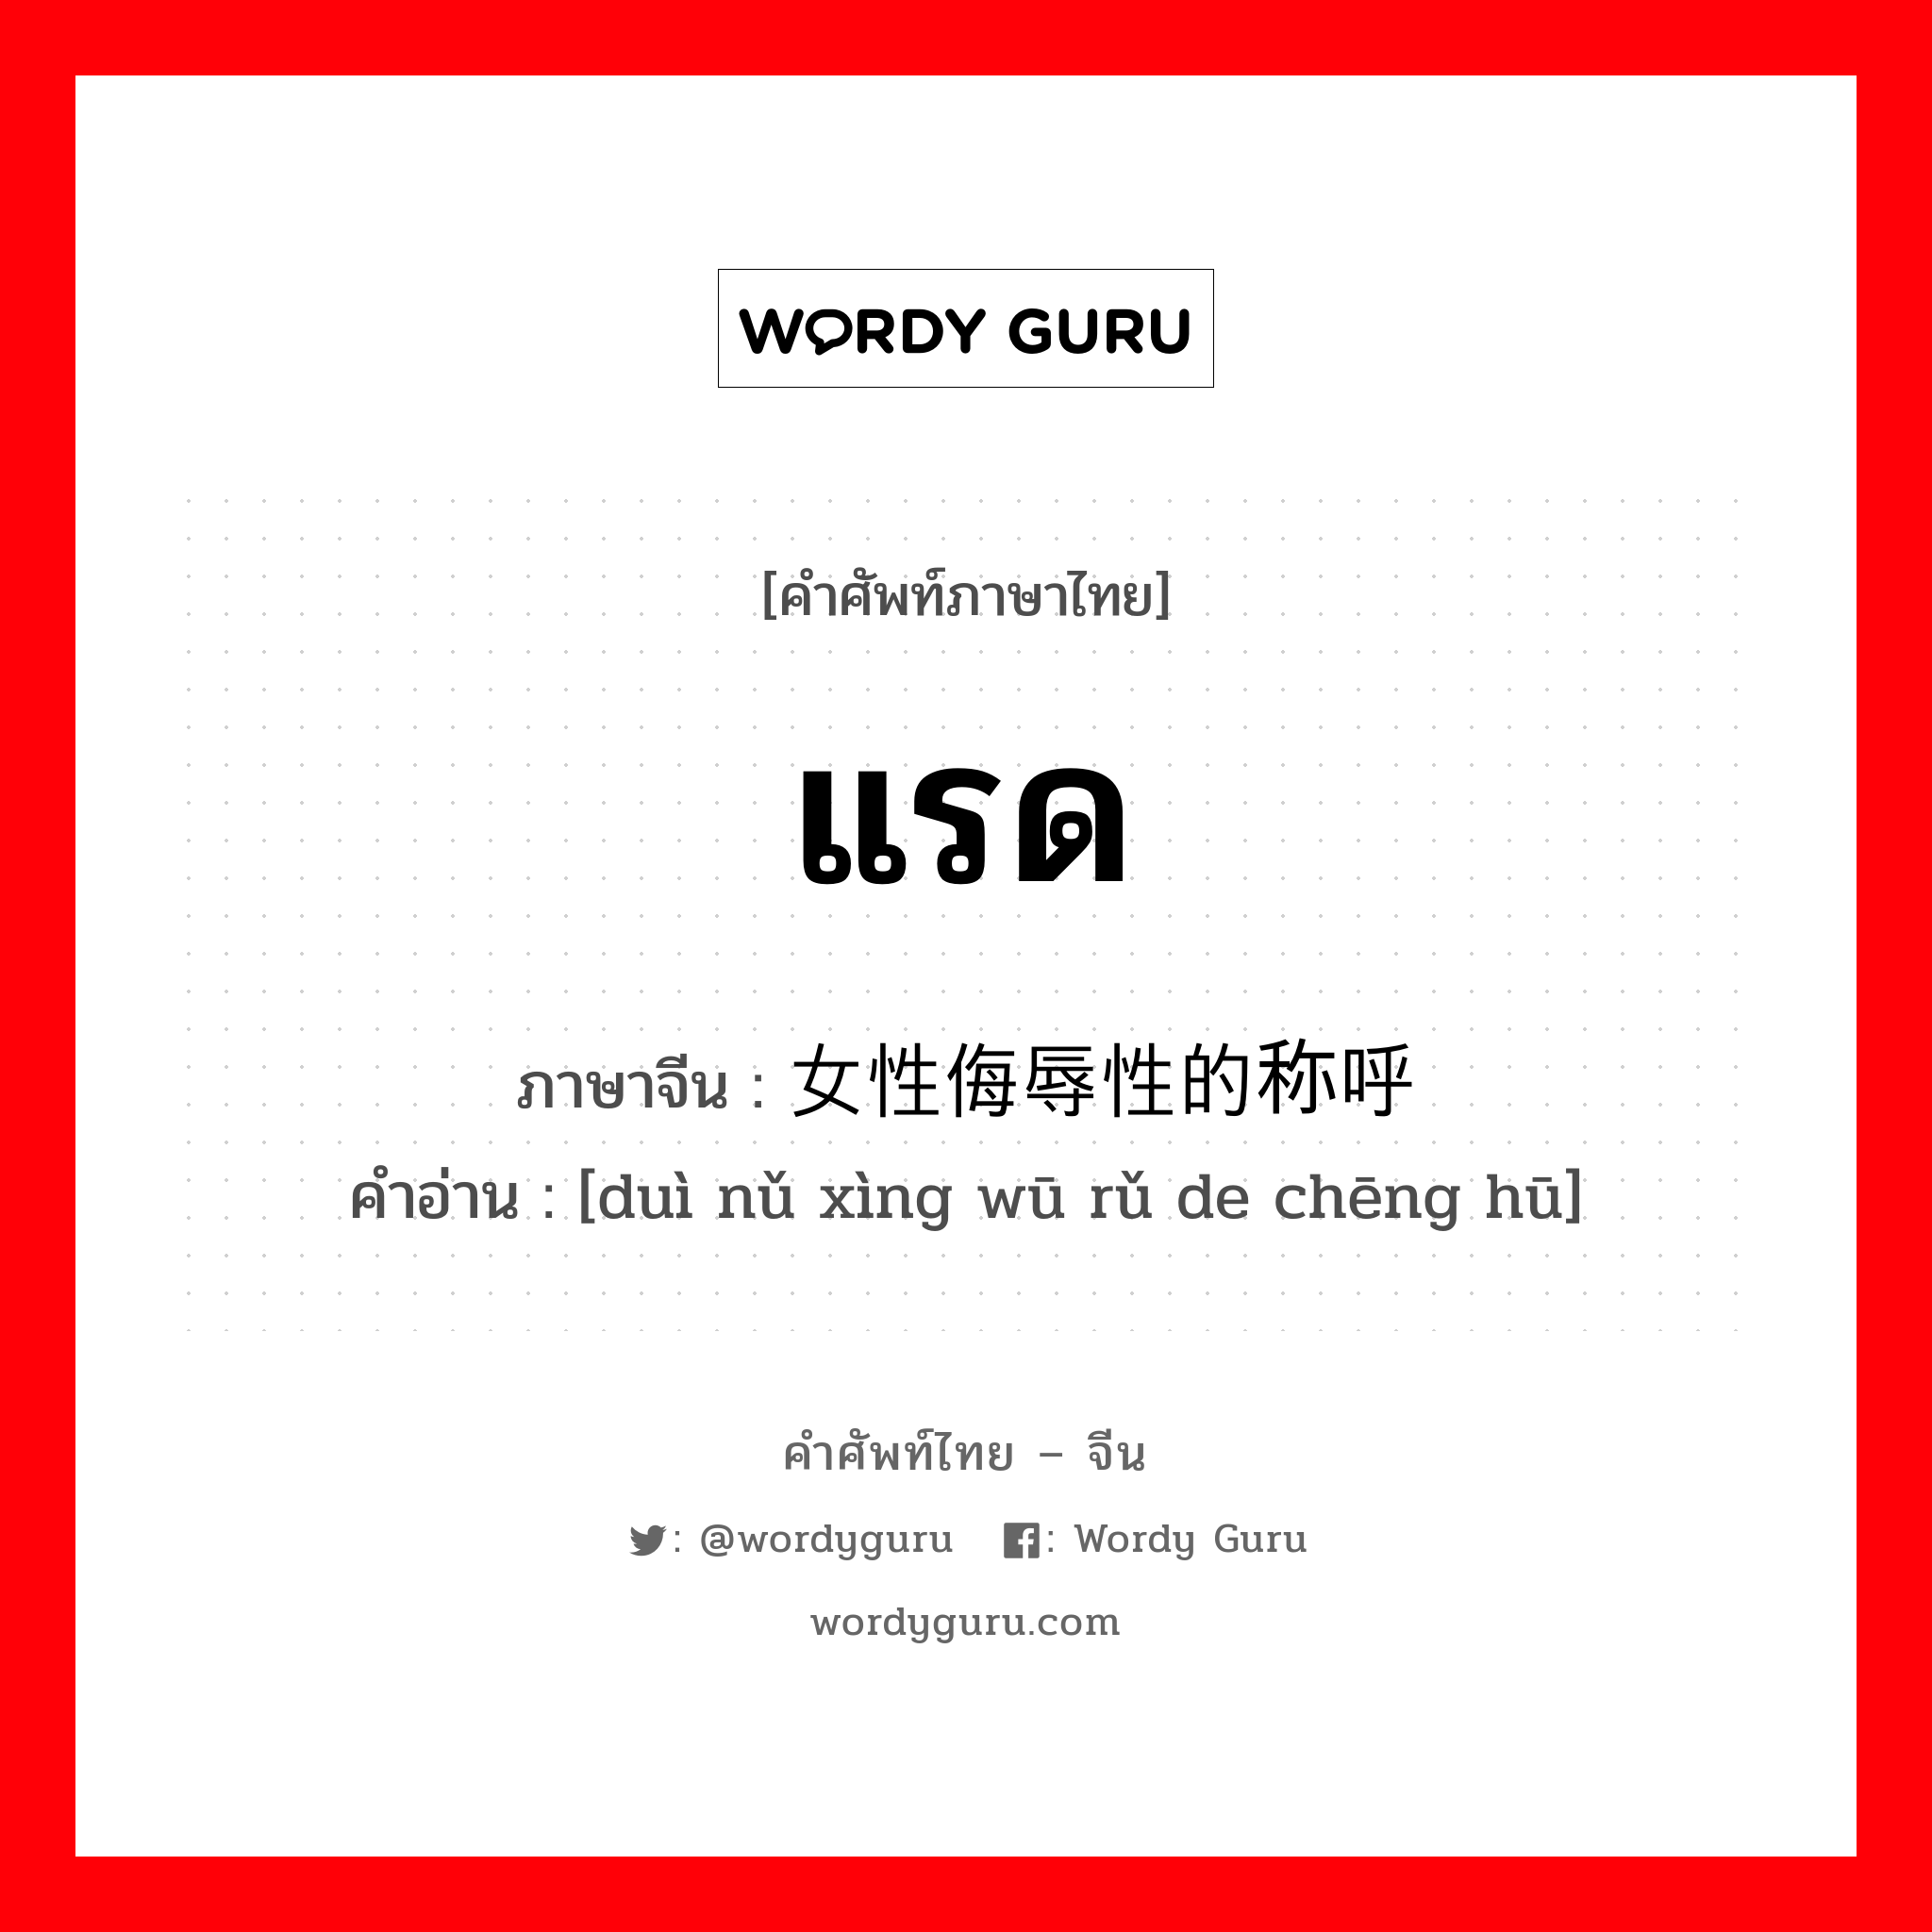 แรด ภาษาจีนคืออะไร, คำศัพท์ภาษาไทย - จีน แรด ภาษาจีน 对女性侮辱性的称呼 คำอ่าน [duì nǔ xìng wū rǔ de chēng hū]